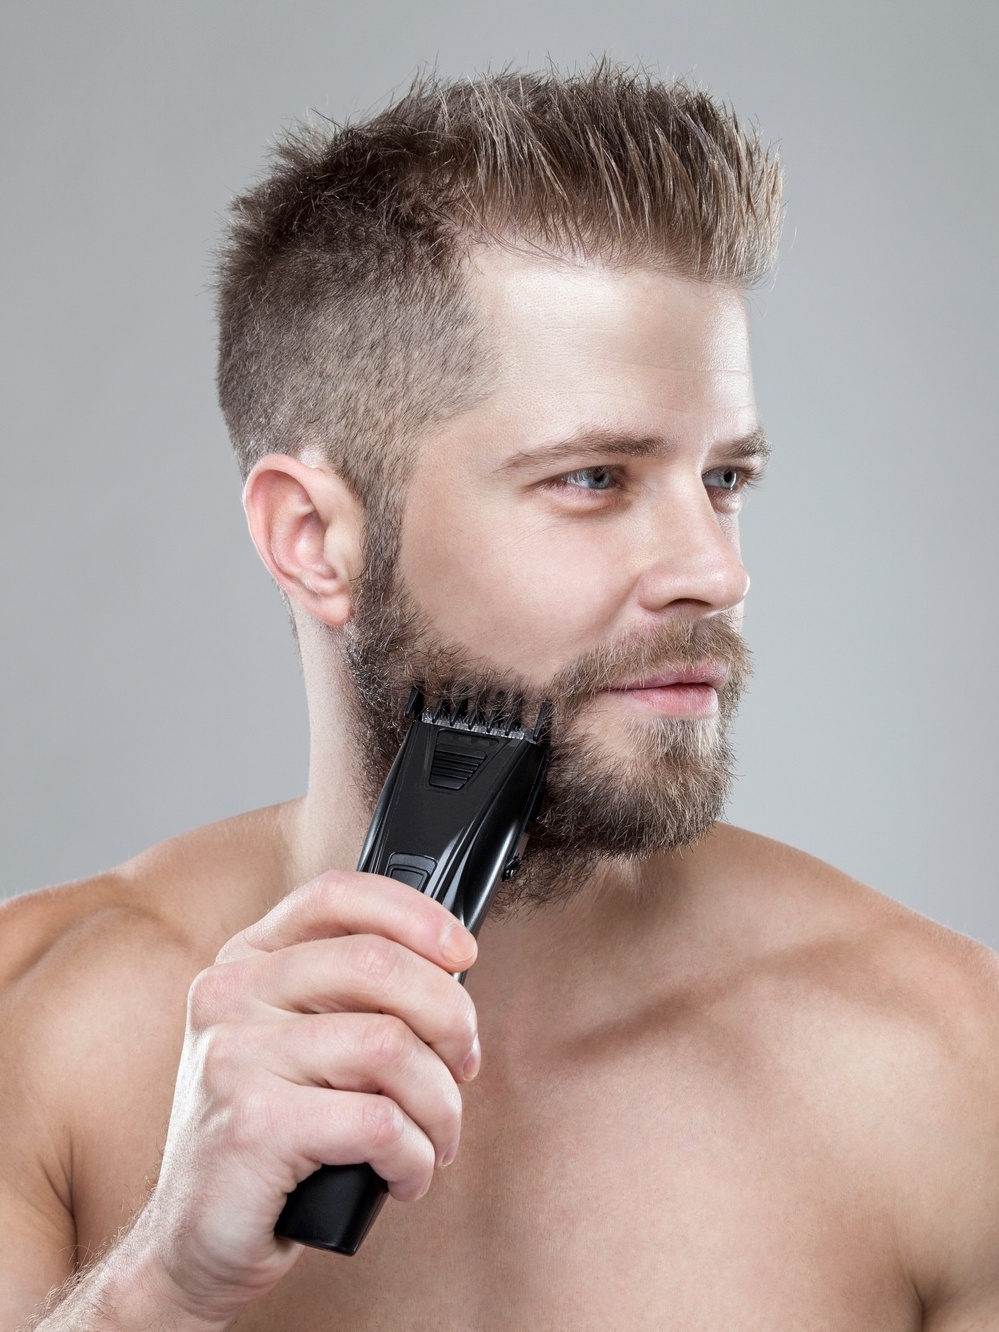 Jogo Pou tempo de barbear online. Jogar gratis